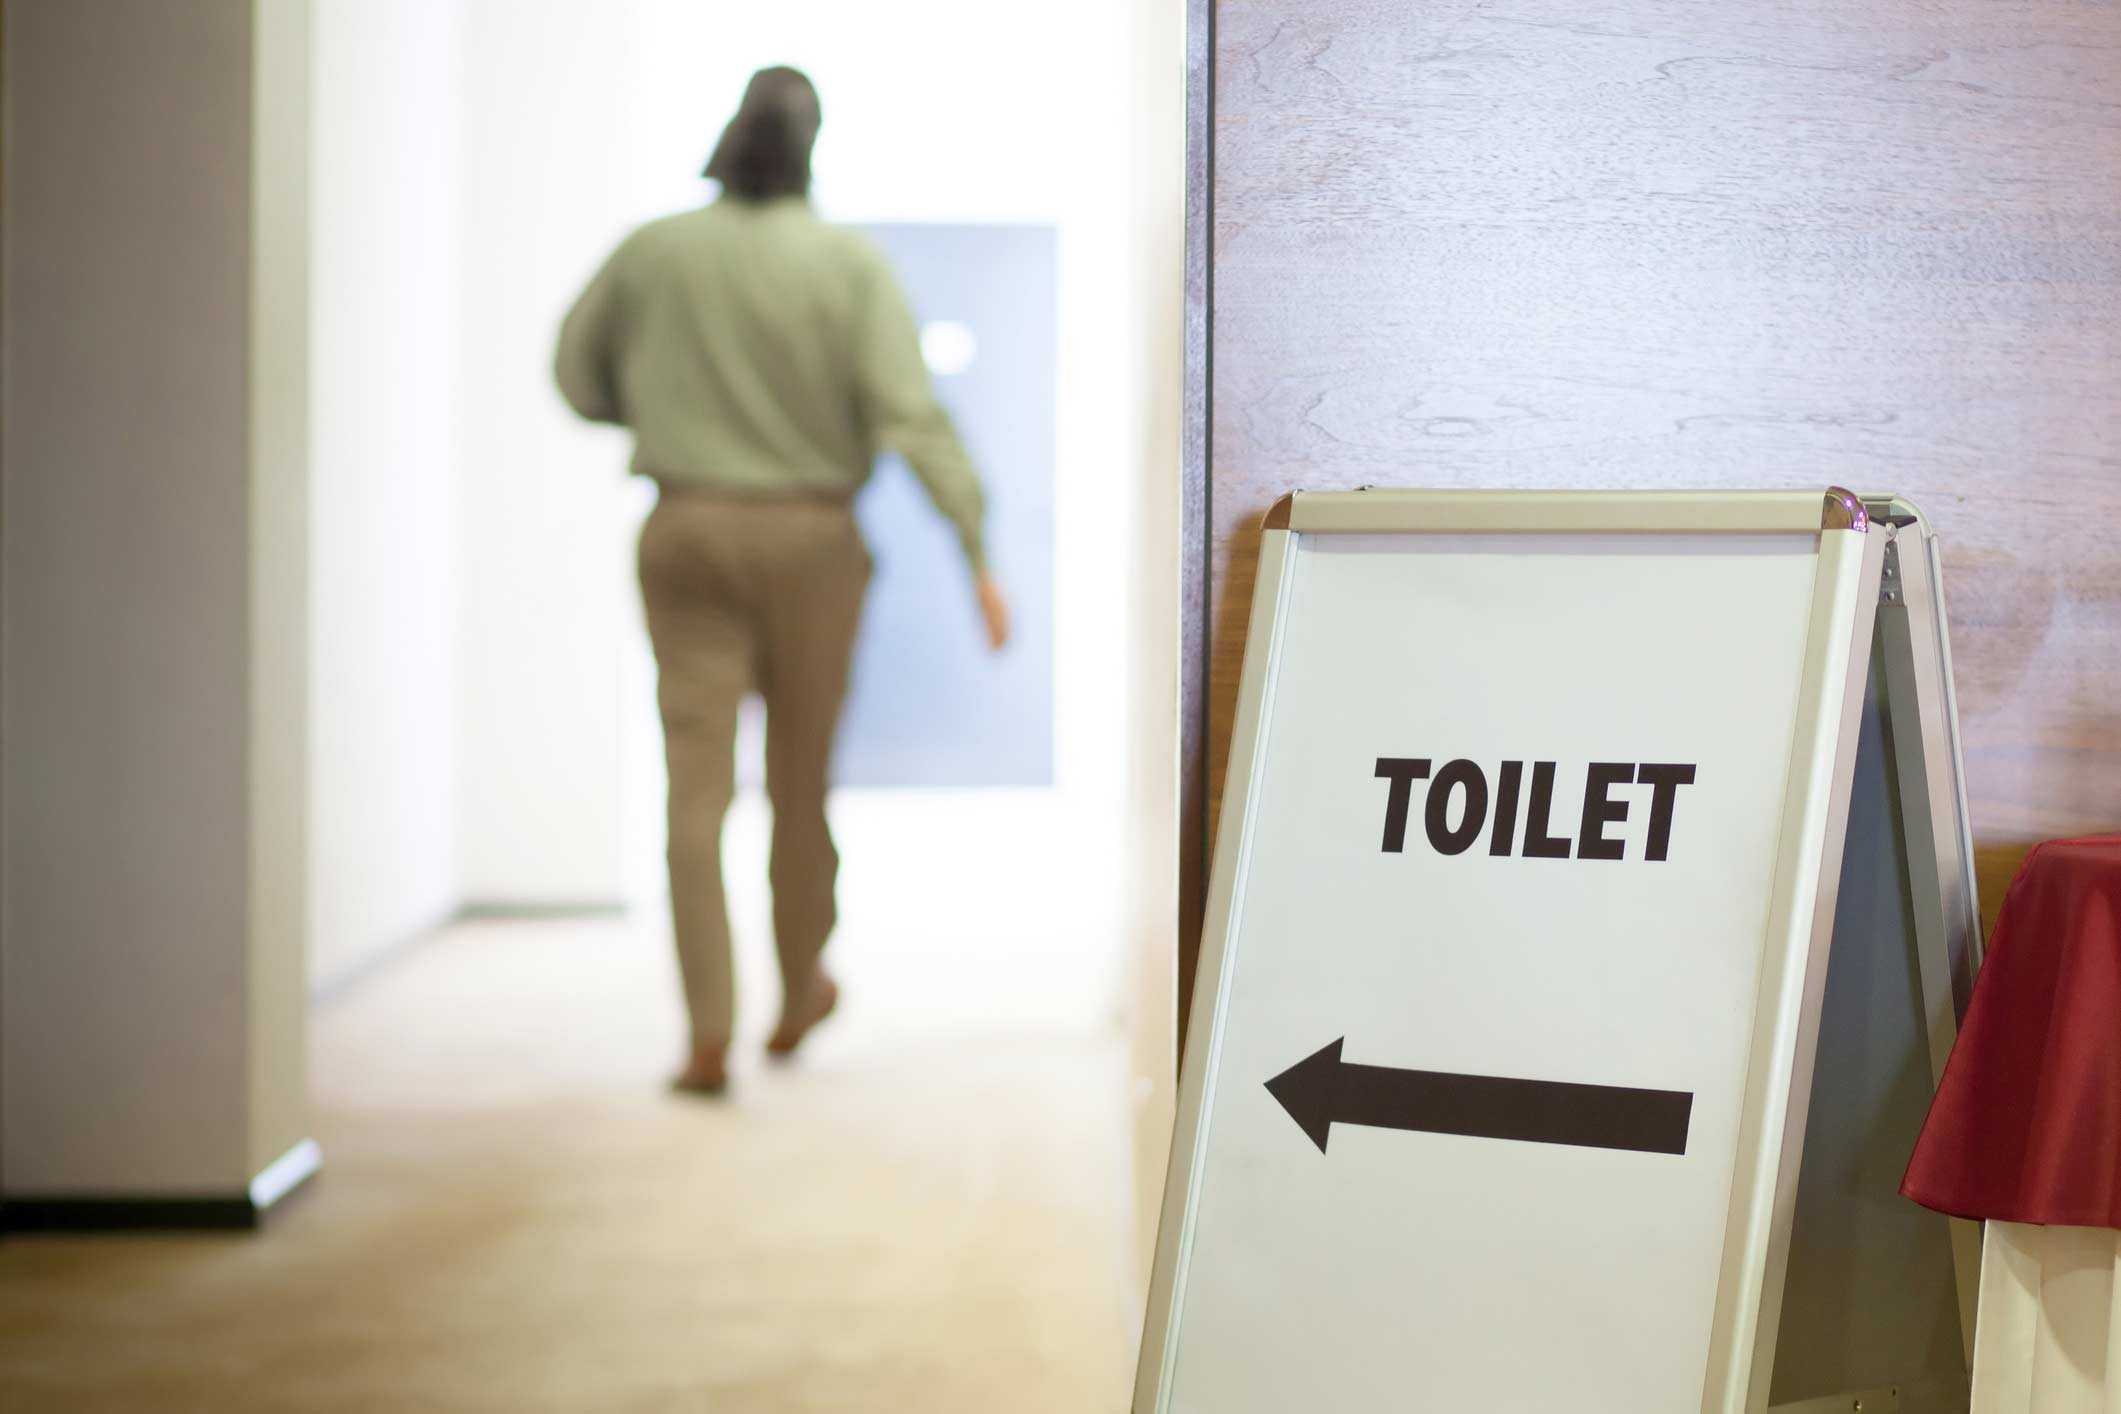 "туалет закрыт". почему барнаульцам трудно справить нужду в общественных местах